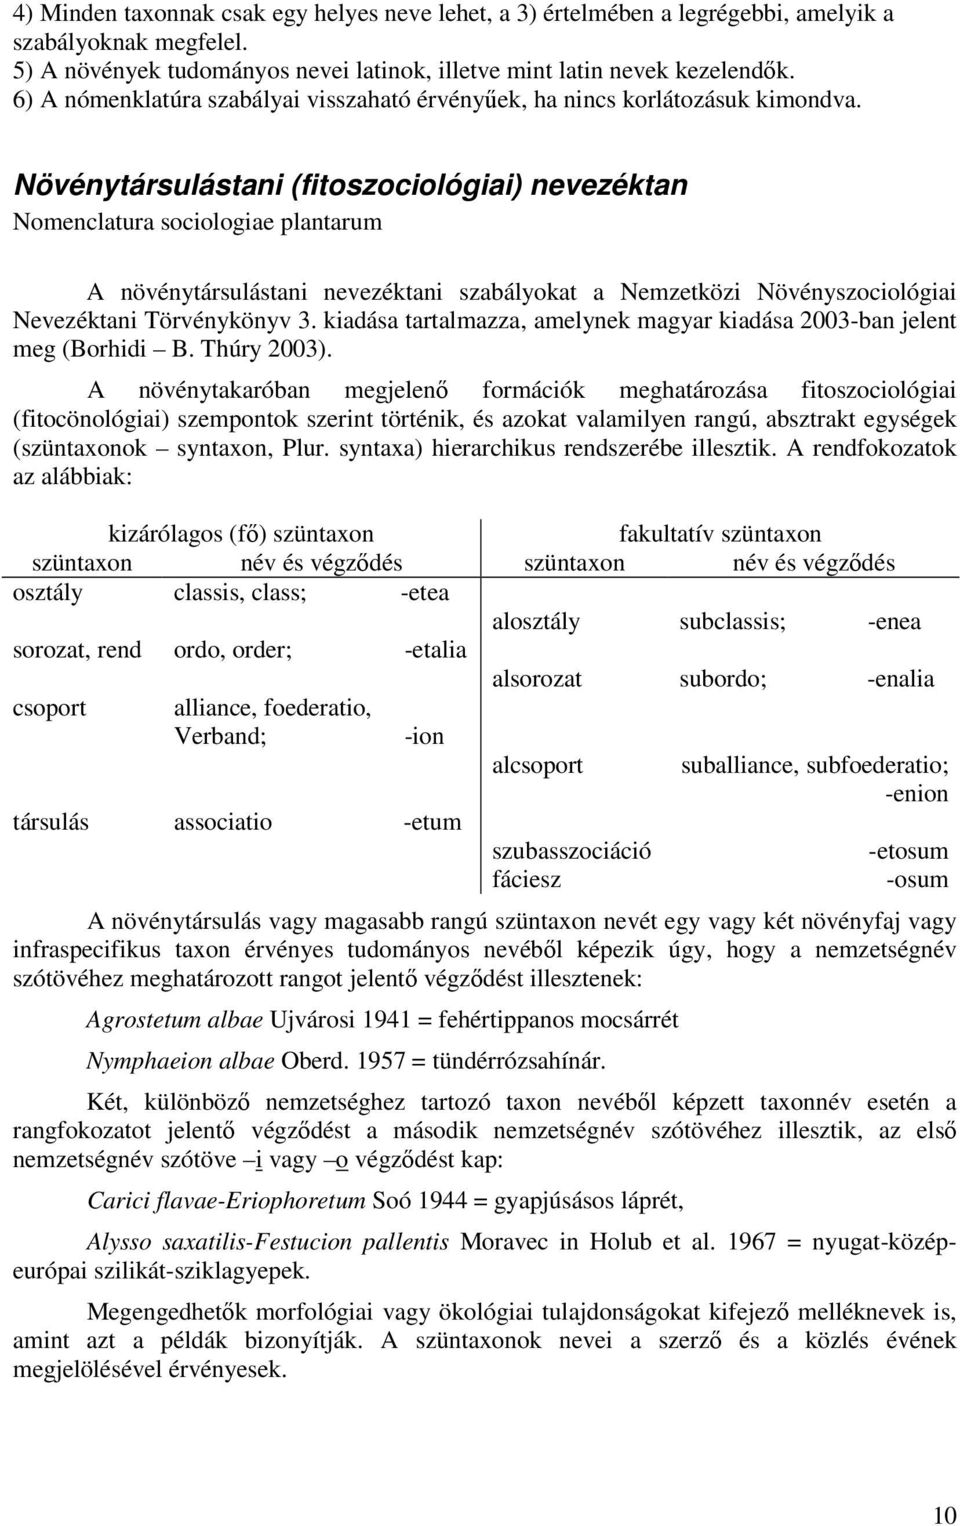 Bevezetés a botanikai latin szavak és kifejezések használatába - PDF  Ingyenes letöltés